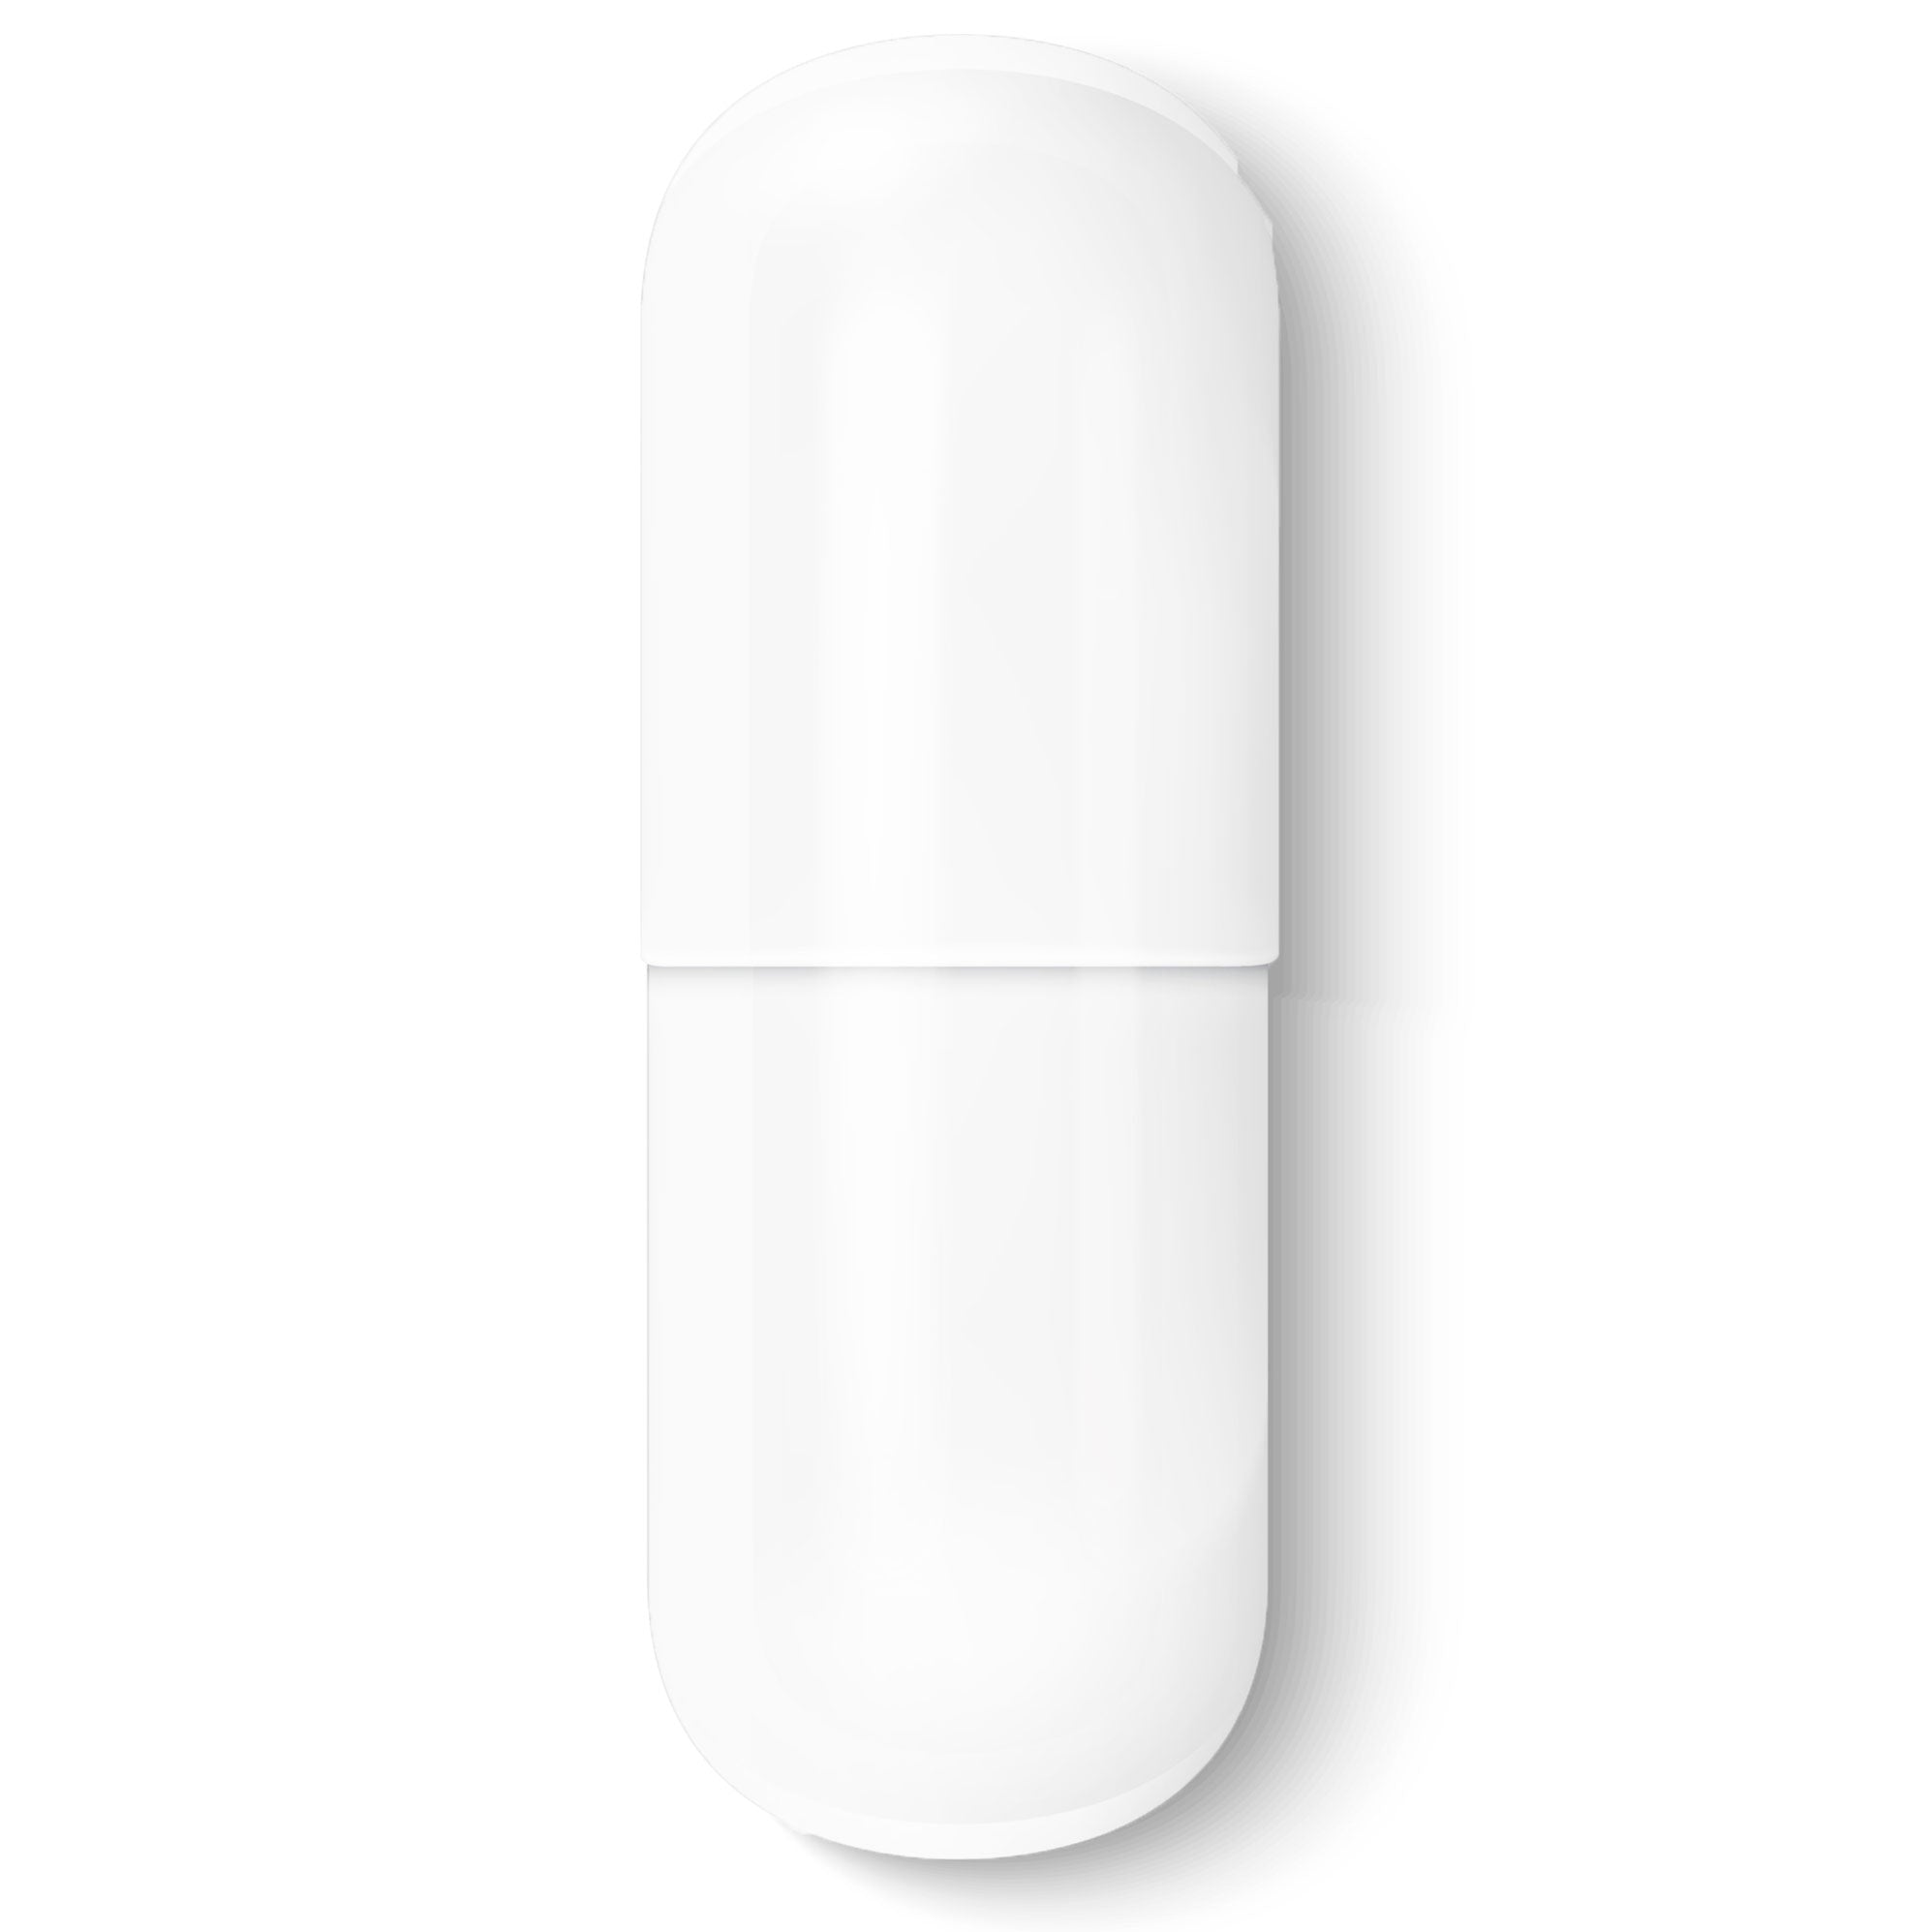 Size #0-White/White - Gelatin Capsules